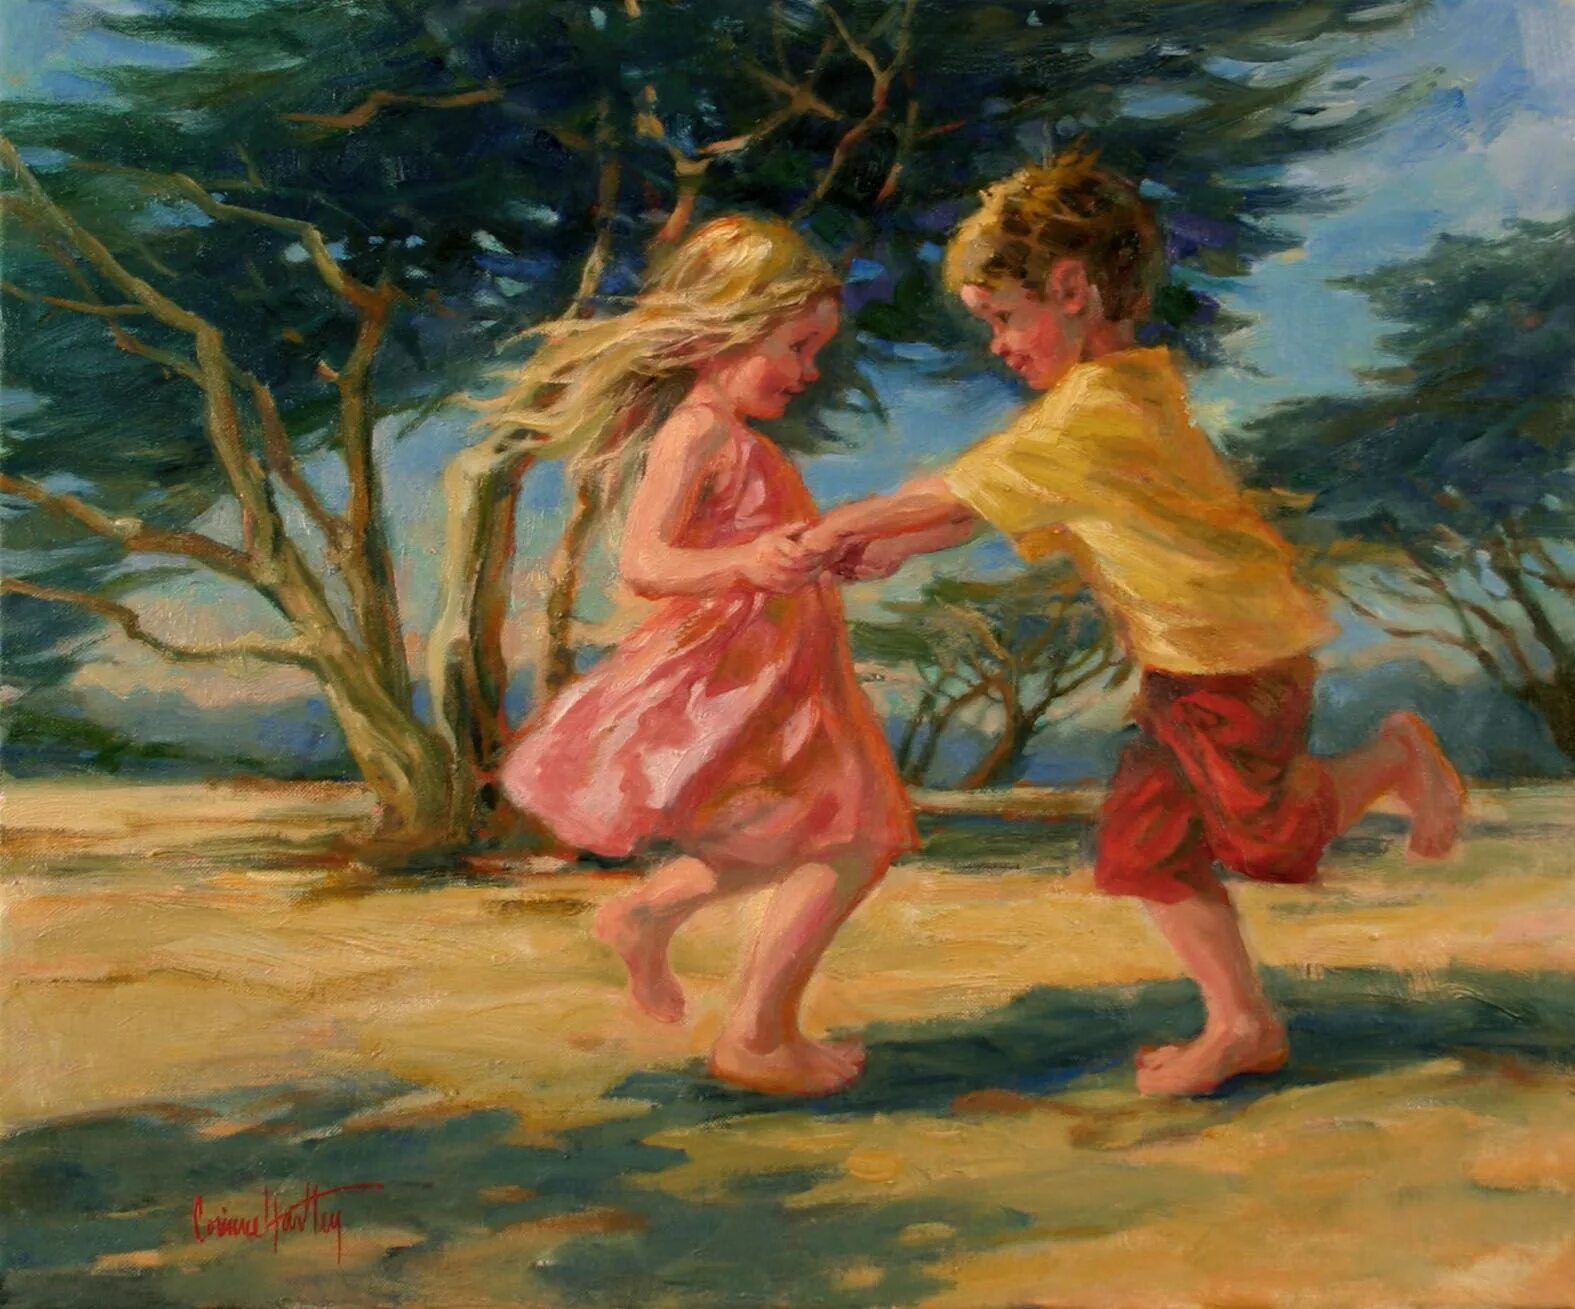 Painting играть. Corinne Hartley картины. Corinne Hartley картины бегущие дети. Играющие дети в живописи. Счастливое детство живопись.